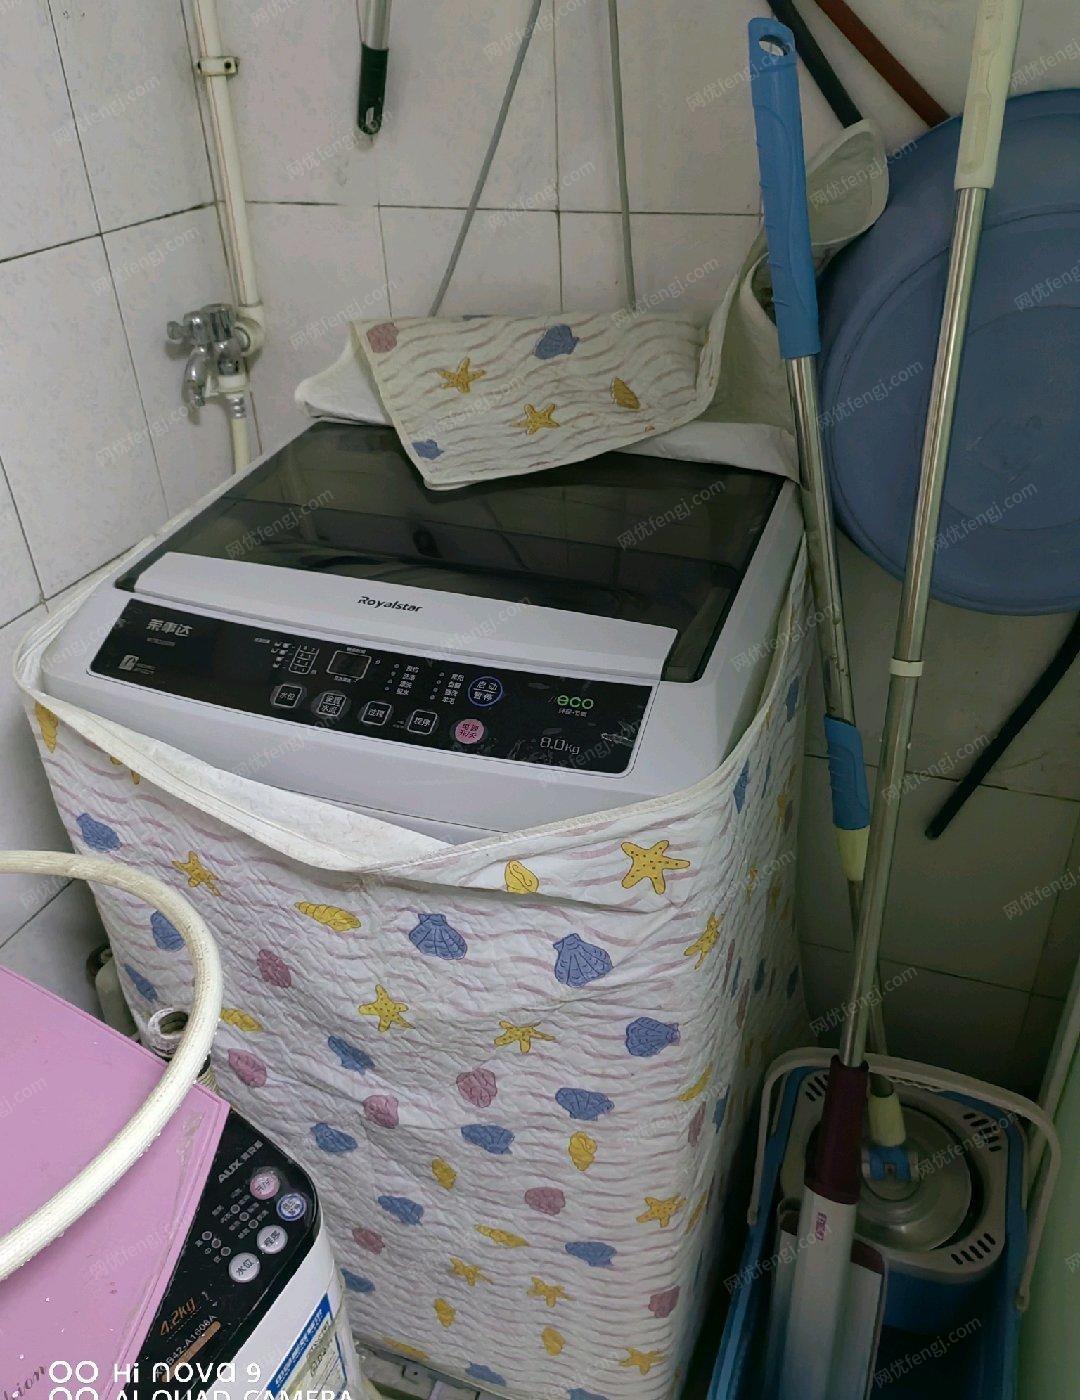 安徽合肥自用8公斤全自动洗衣机出售